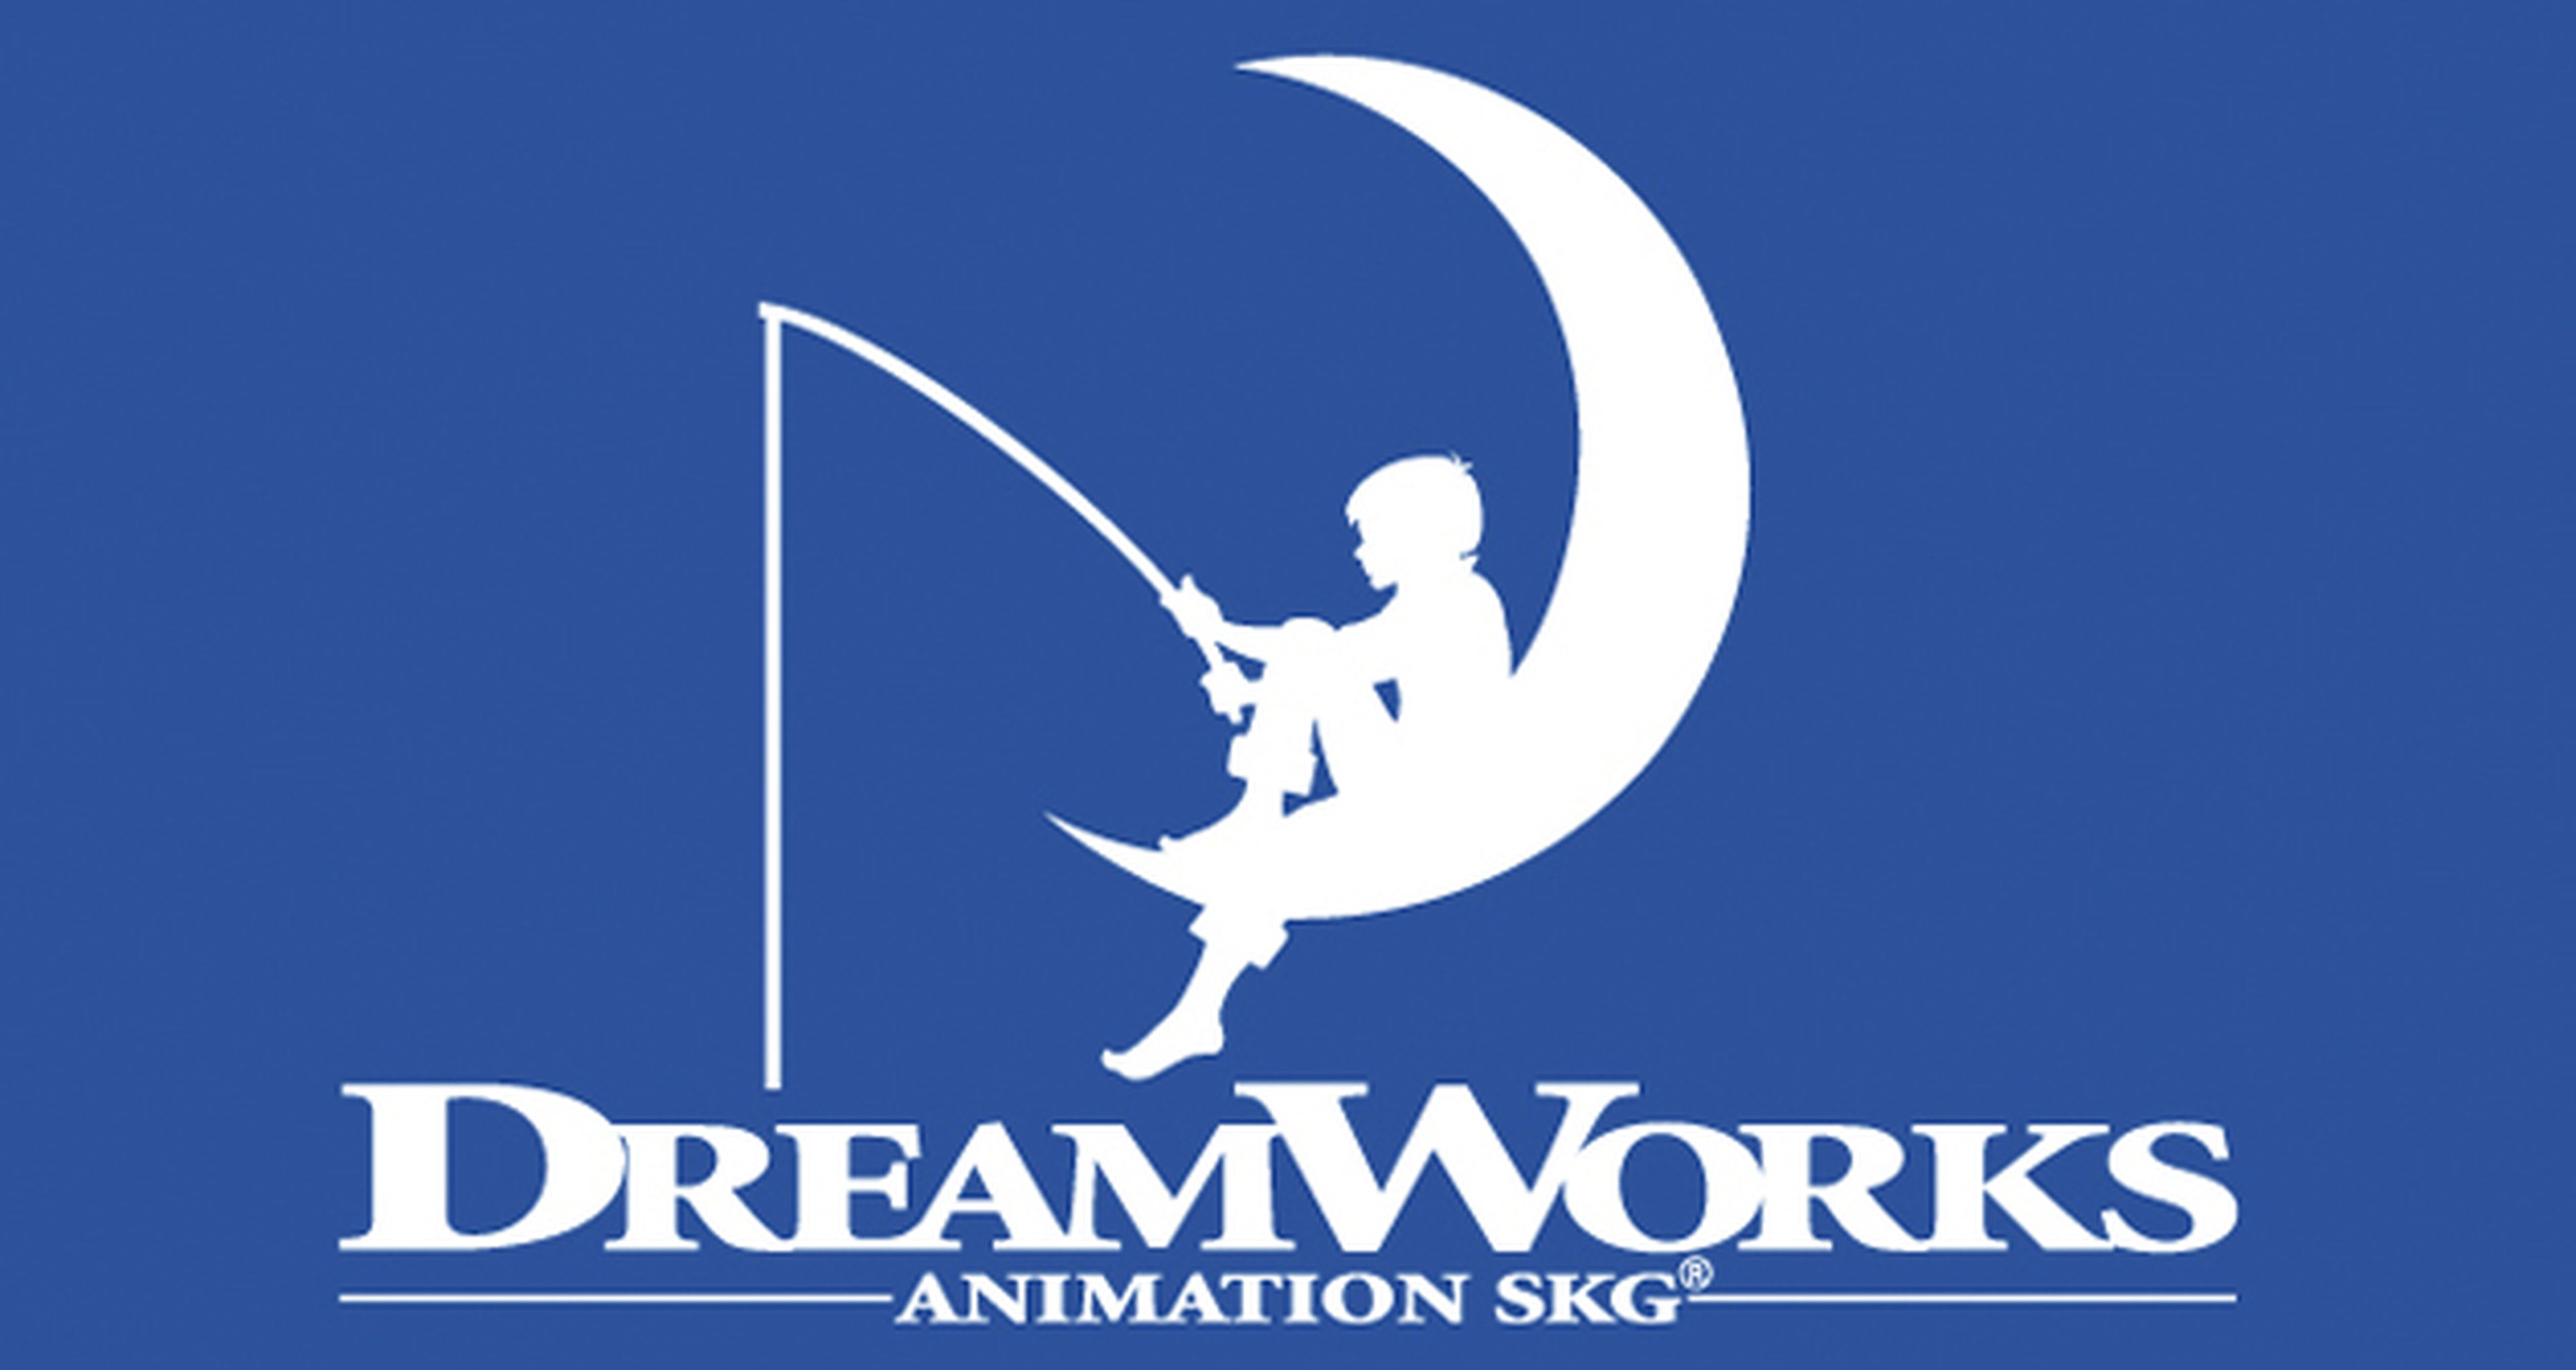 Cómo entrenar a tu dragón 3 se retrasa y Dreamworks despide a más de 500 trabajadores